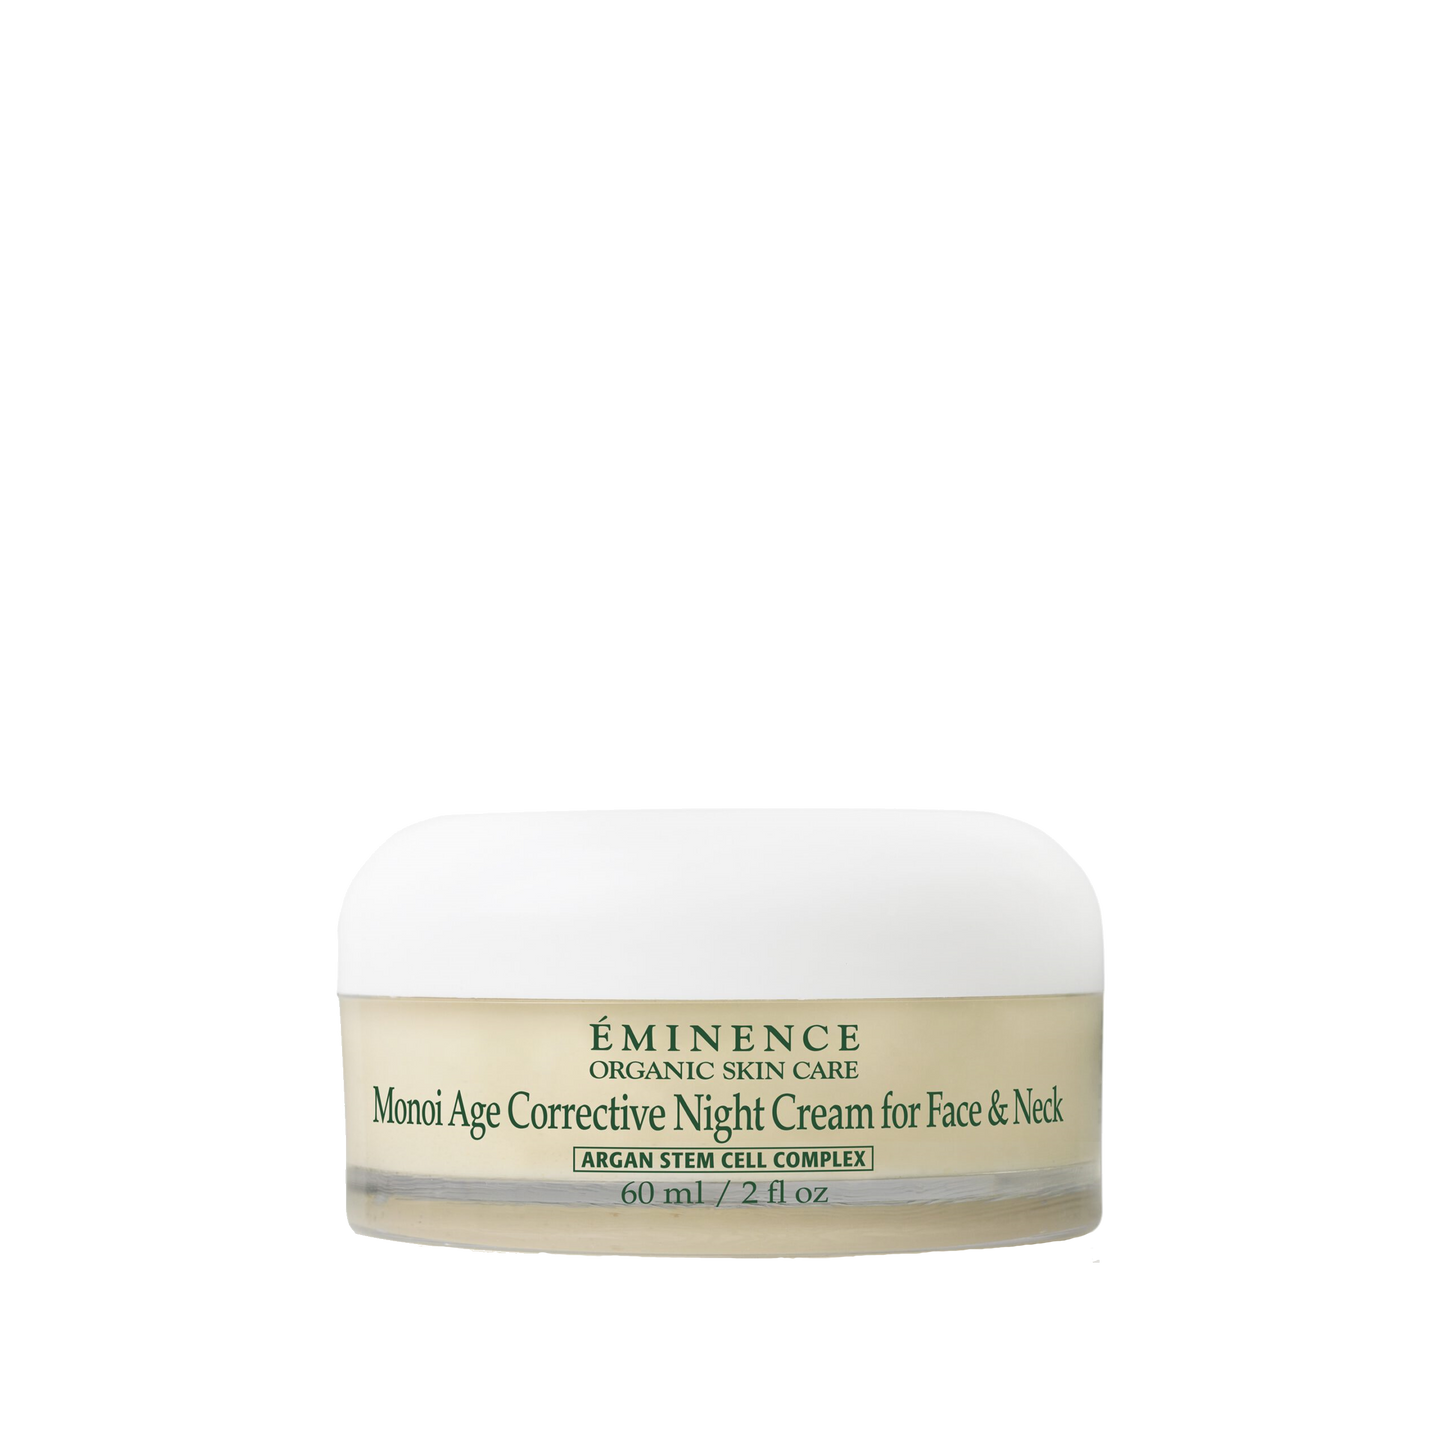 Monoi Age Corrective Night Cream For Face & Neck ingrediënten